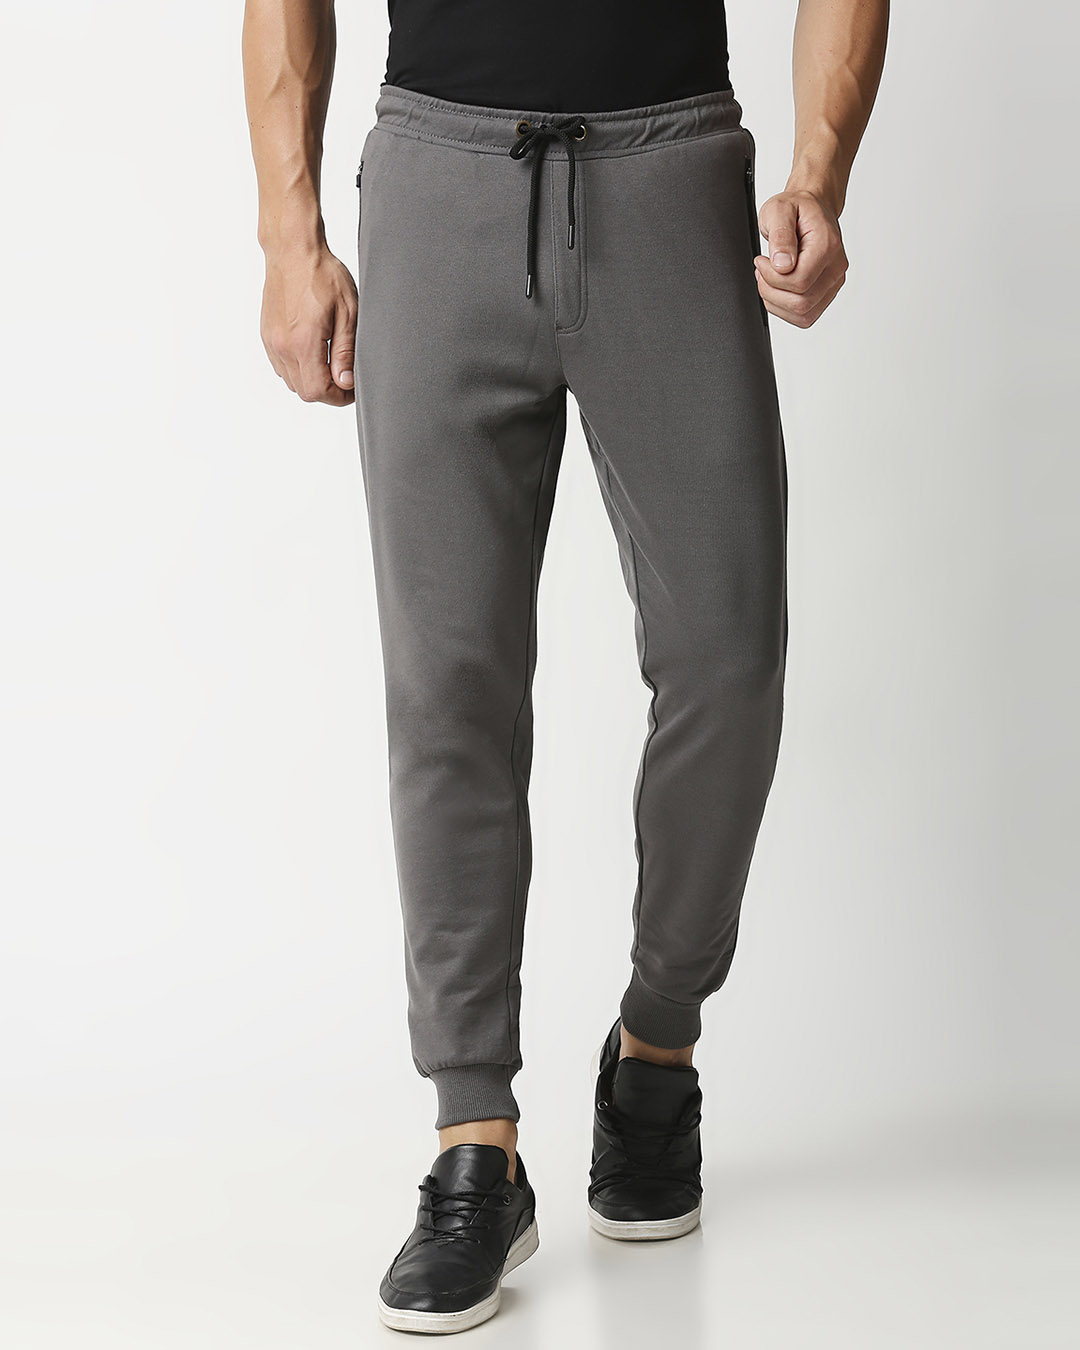 Buy Men's Charcoal Grey Zipper Joggers for Men grey Online at Bewakoof